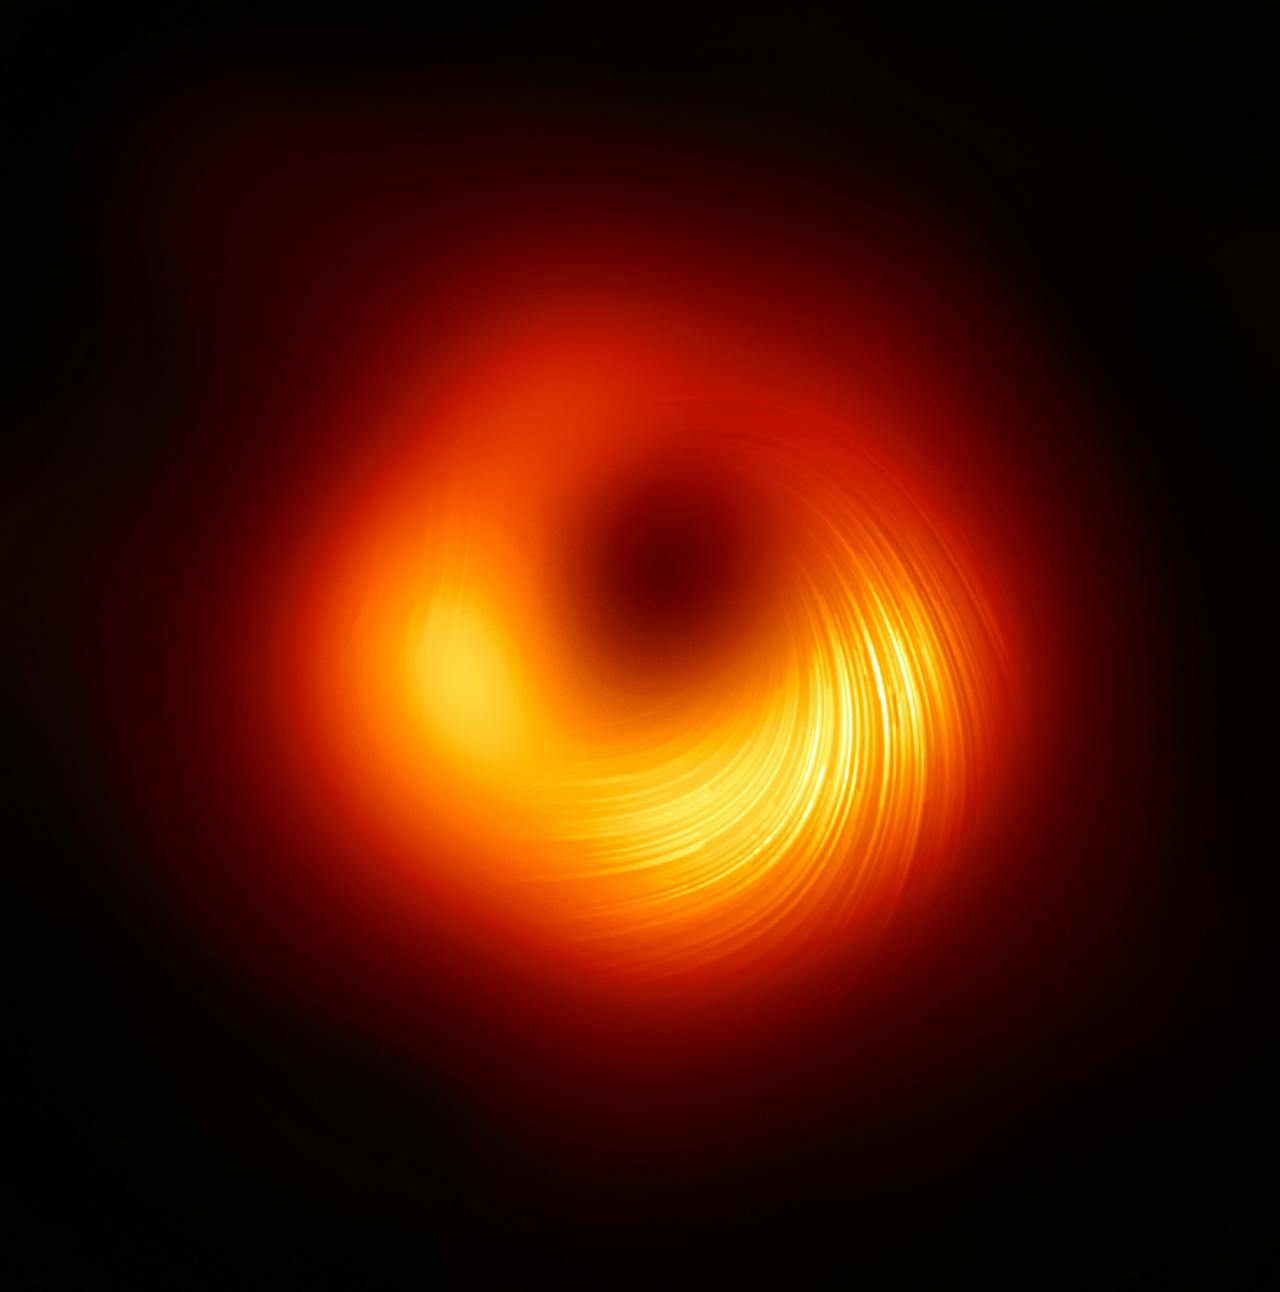 Het zwarte gat in het centrum van sterrenstelsel M87, in beeld gebracht door de Event Horizon Telescope.